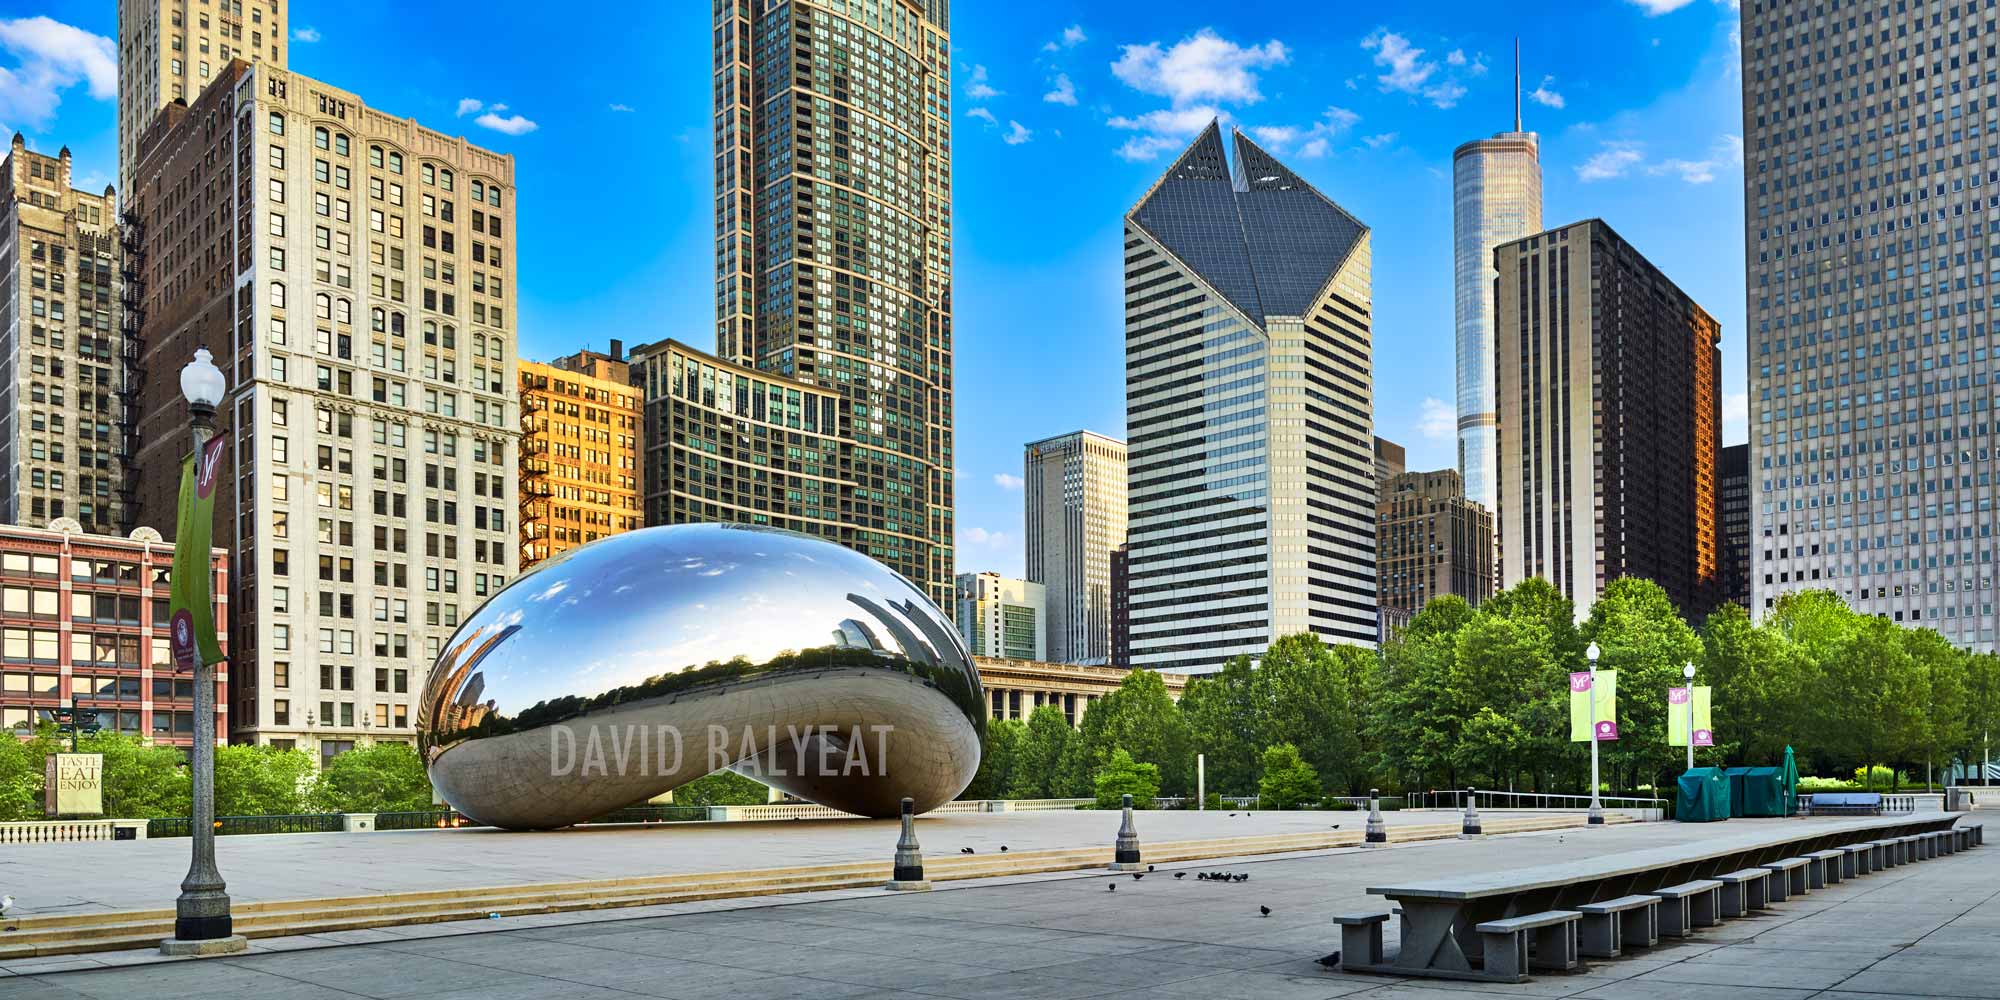 Cloud Gate Millenium Park Chicago skyline high-definition HD professional landscape photography